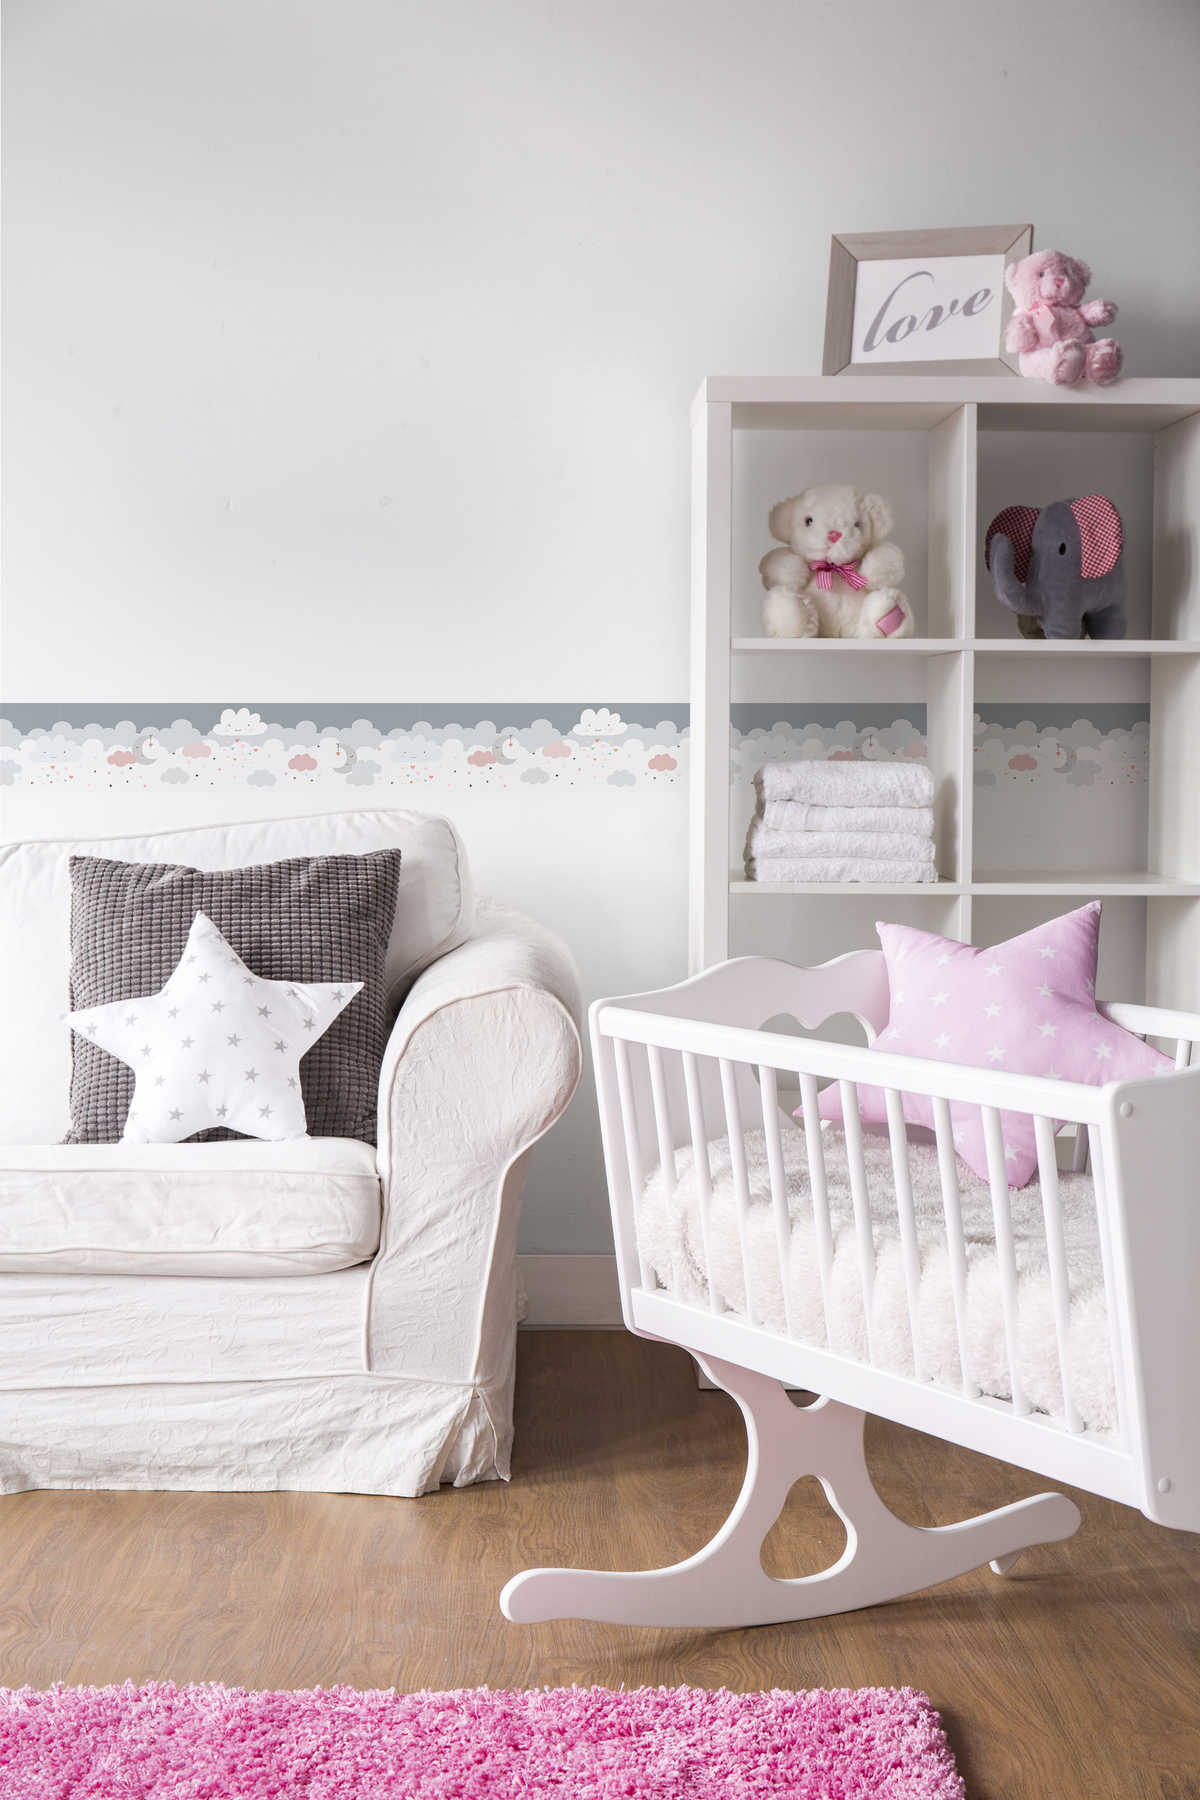             Selbstklebende Babyzimmer Borte "Rosafarbene Zuckerwolken" – Rosa, Grau, Weiß
        